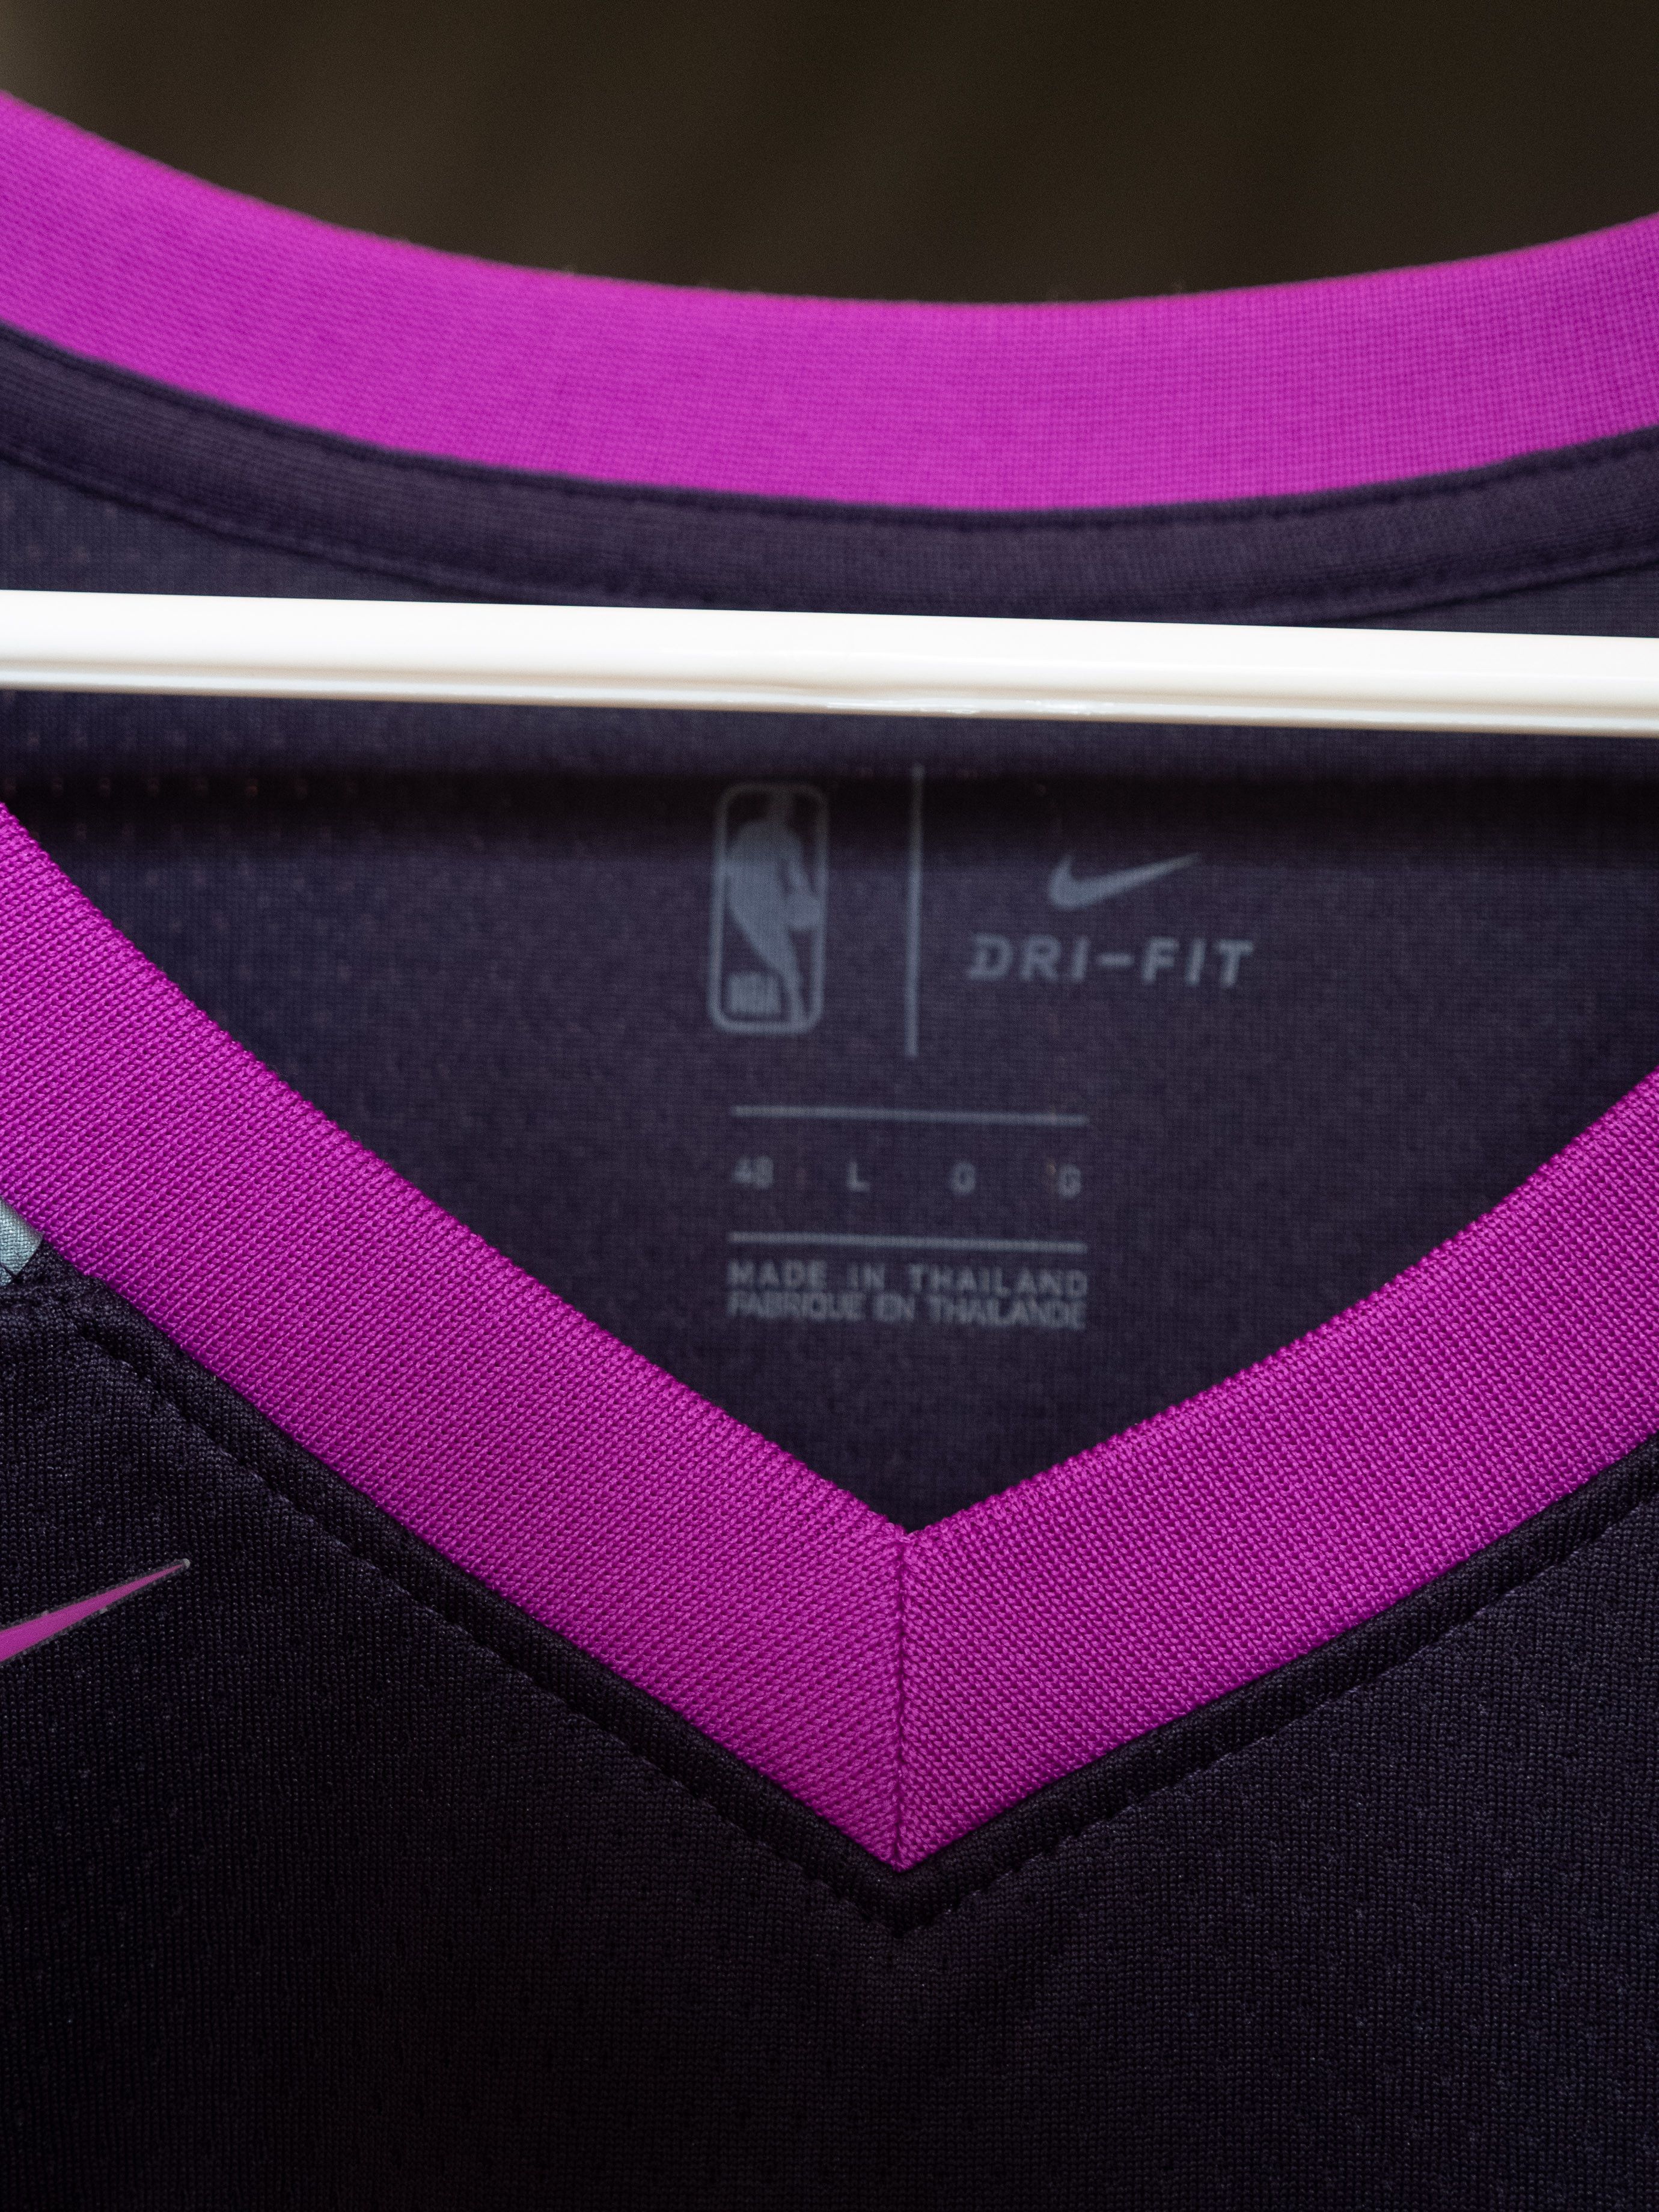 Nike RARE - Purple Rain - Jimmy Butler - Timberwolves Jersey Size US L / EU 52-54 / 3 - 6 Thumbnail